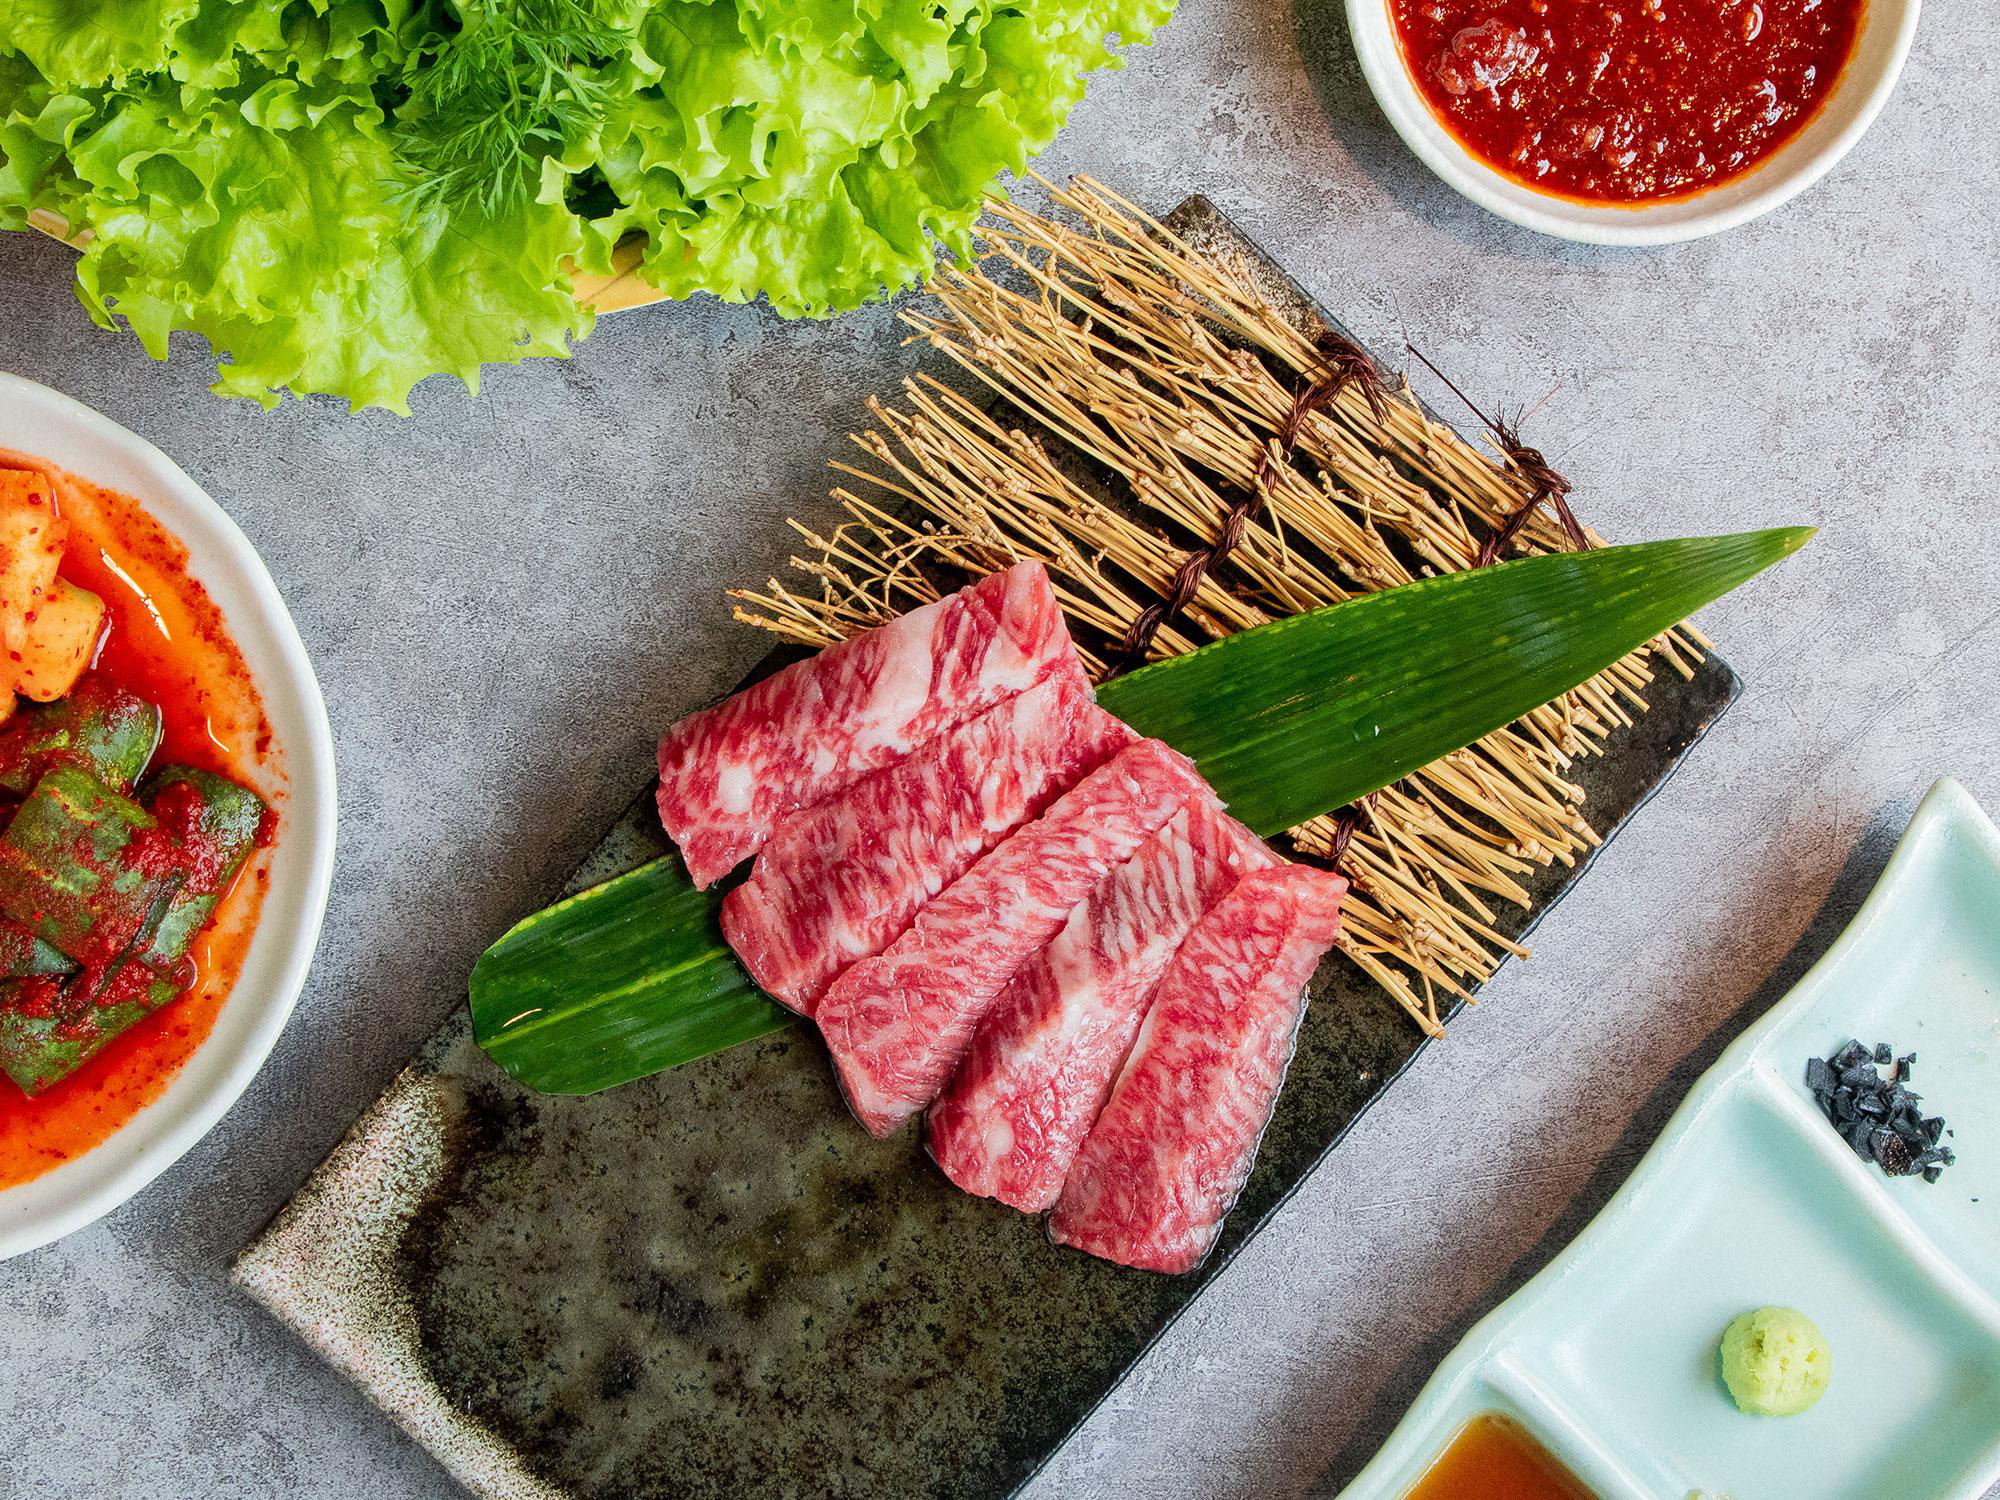 Siêu phẩm thịt đỏ đến từ Nhật Bản - Bò Wagyu Sendai - Ảnh 4.